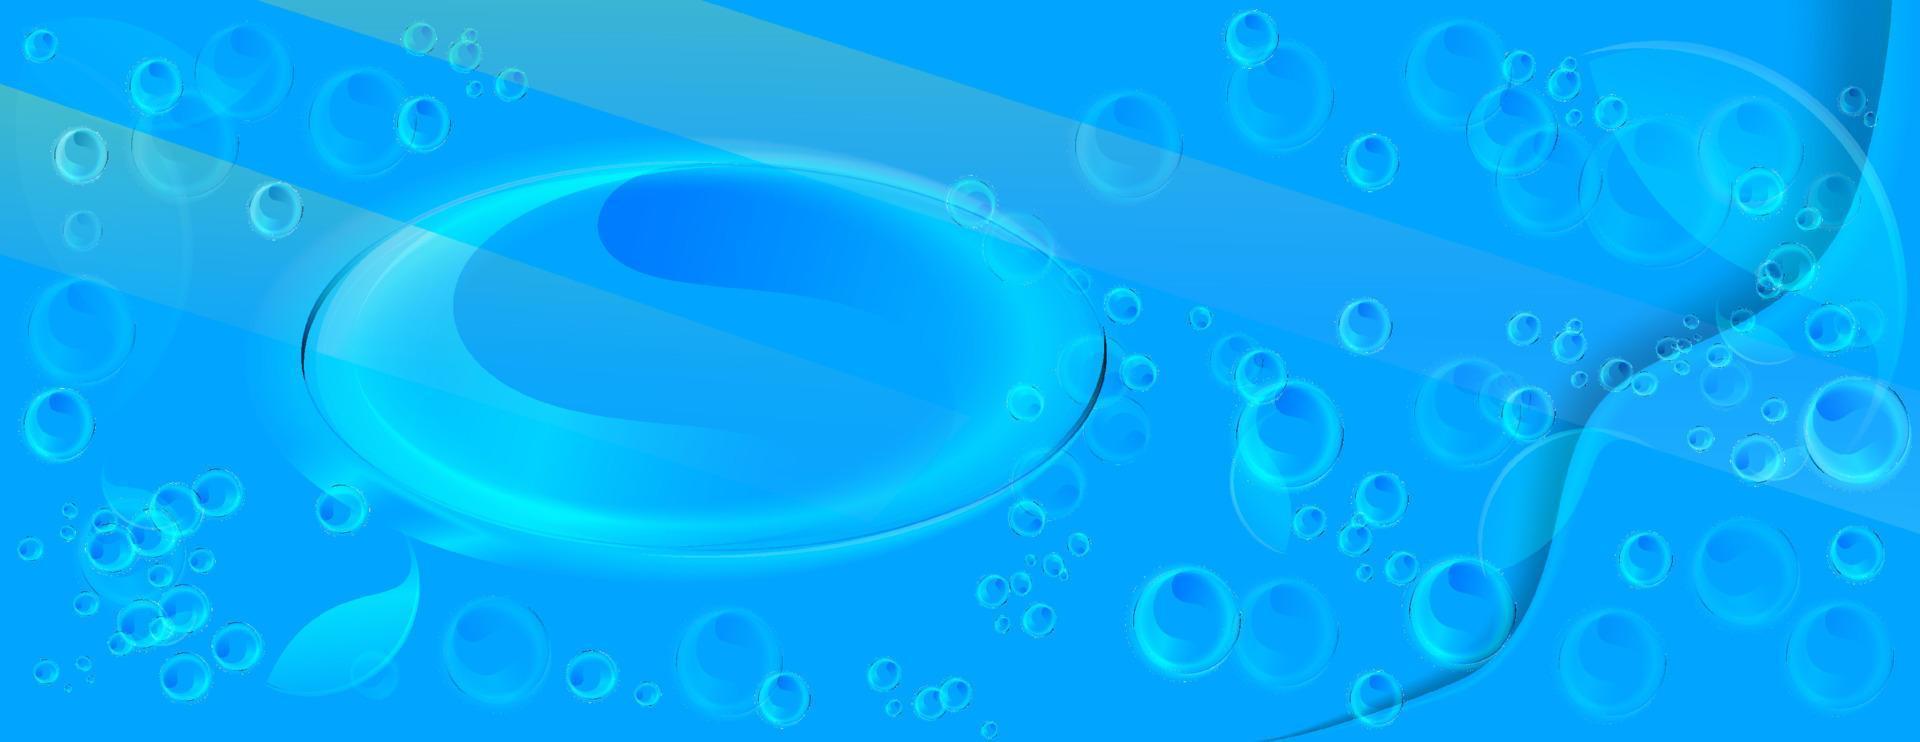 waterlabel met veel bubbels, lichtontwerp, vectorillustratie op een blauwe achtergrond vector